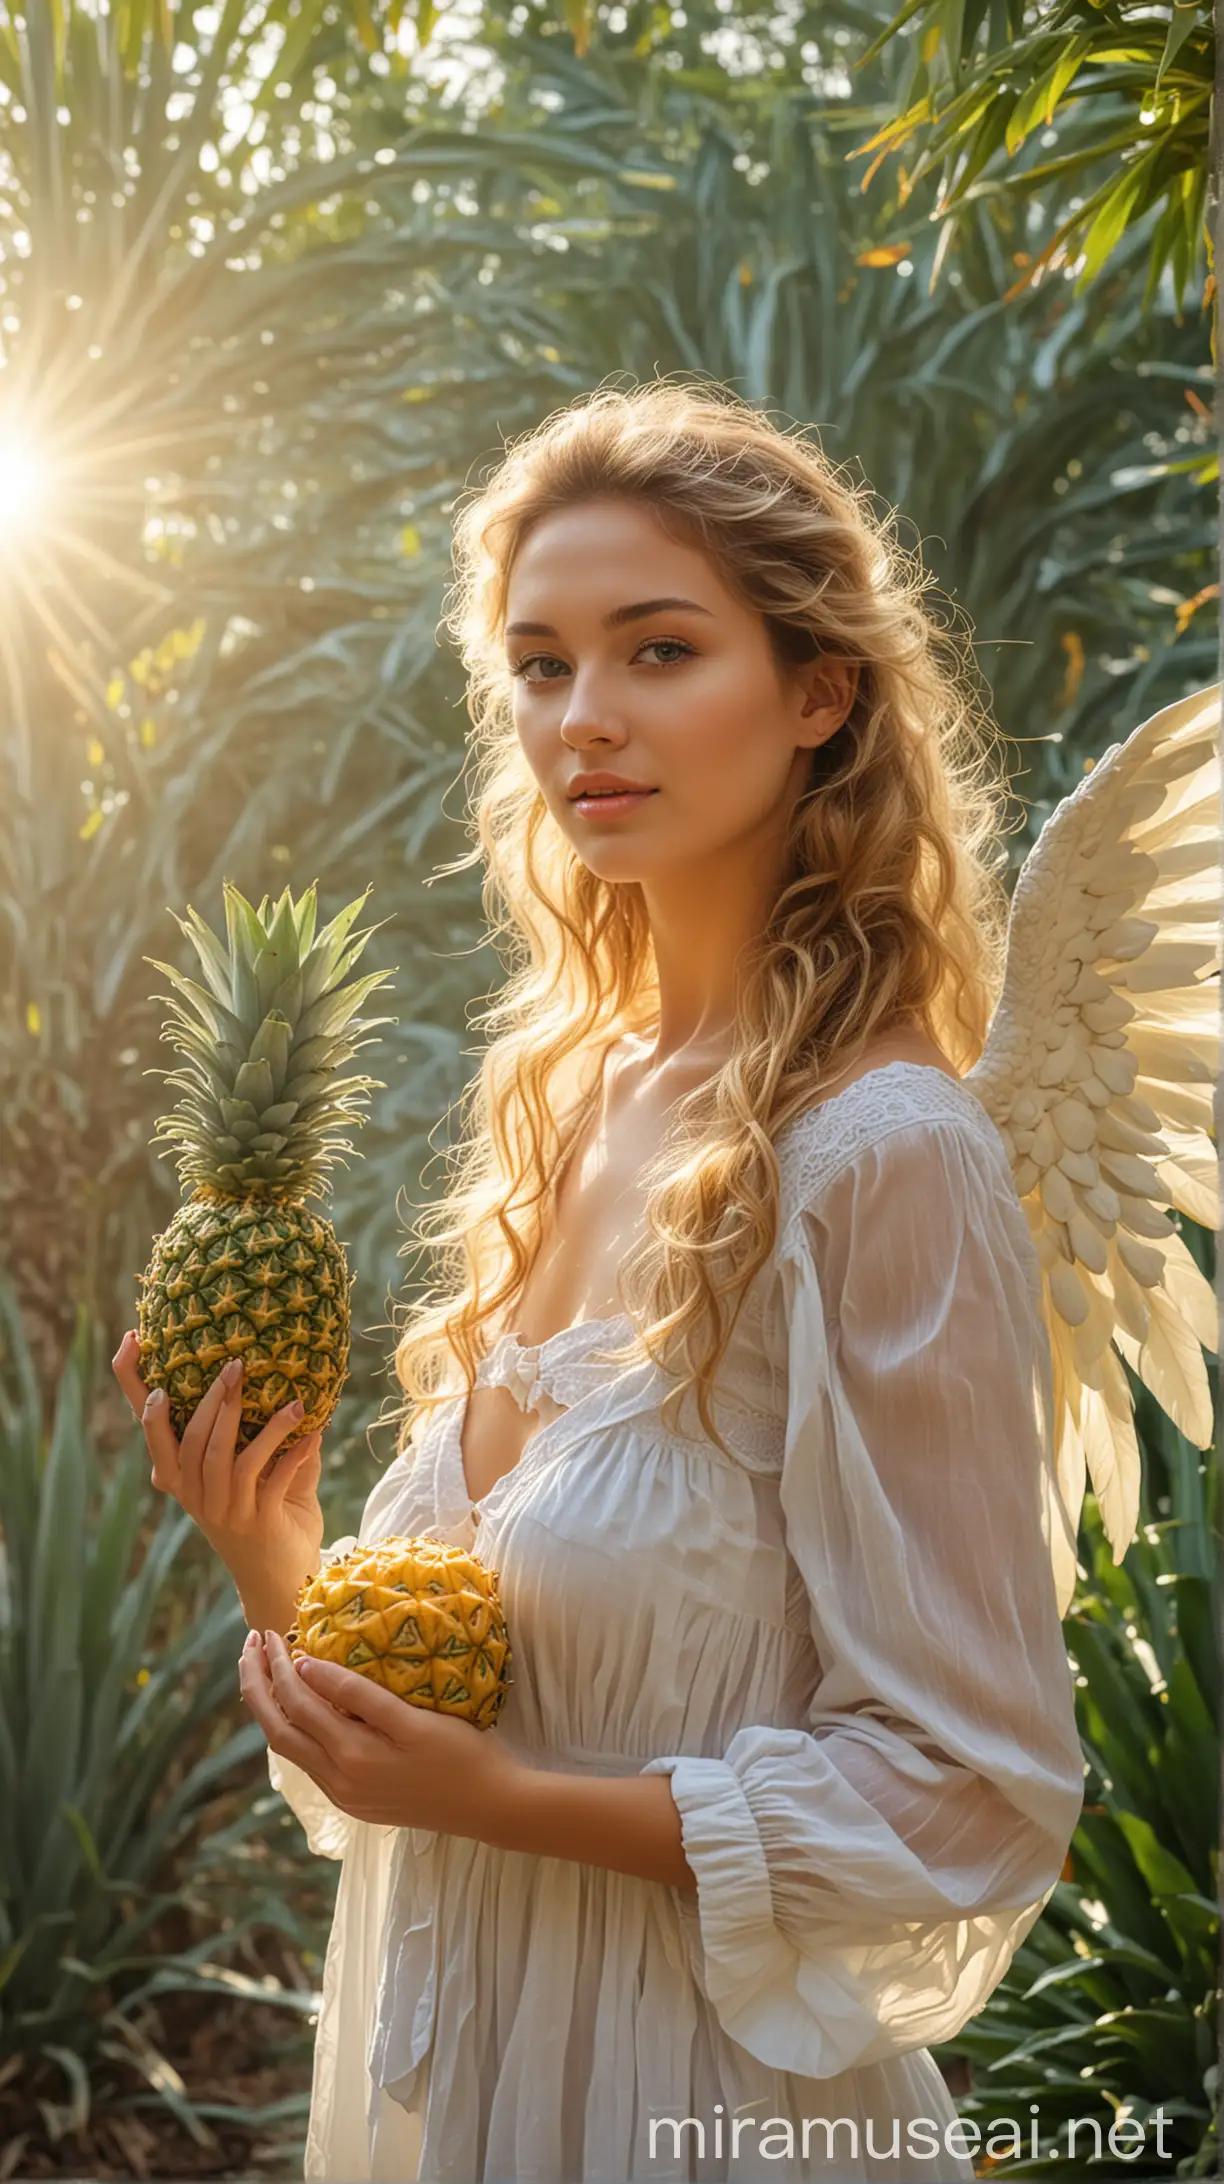 Angel Women Holding Pineapple in Sunlit Natural Setting